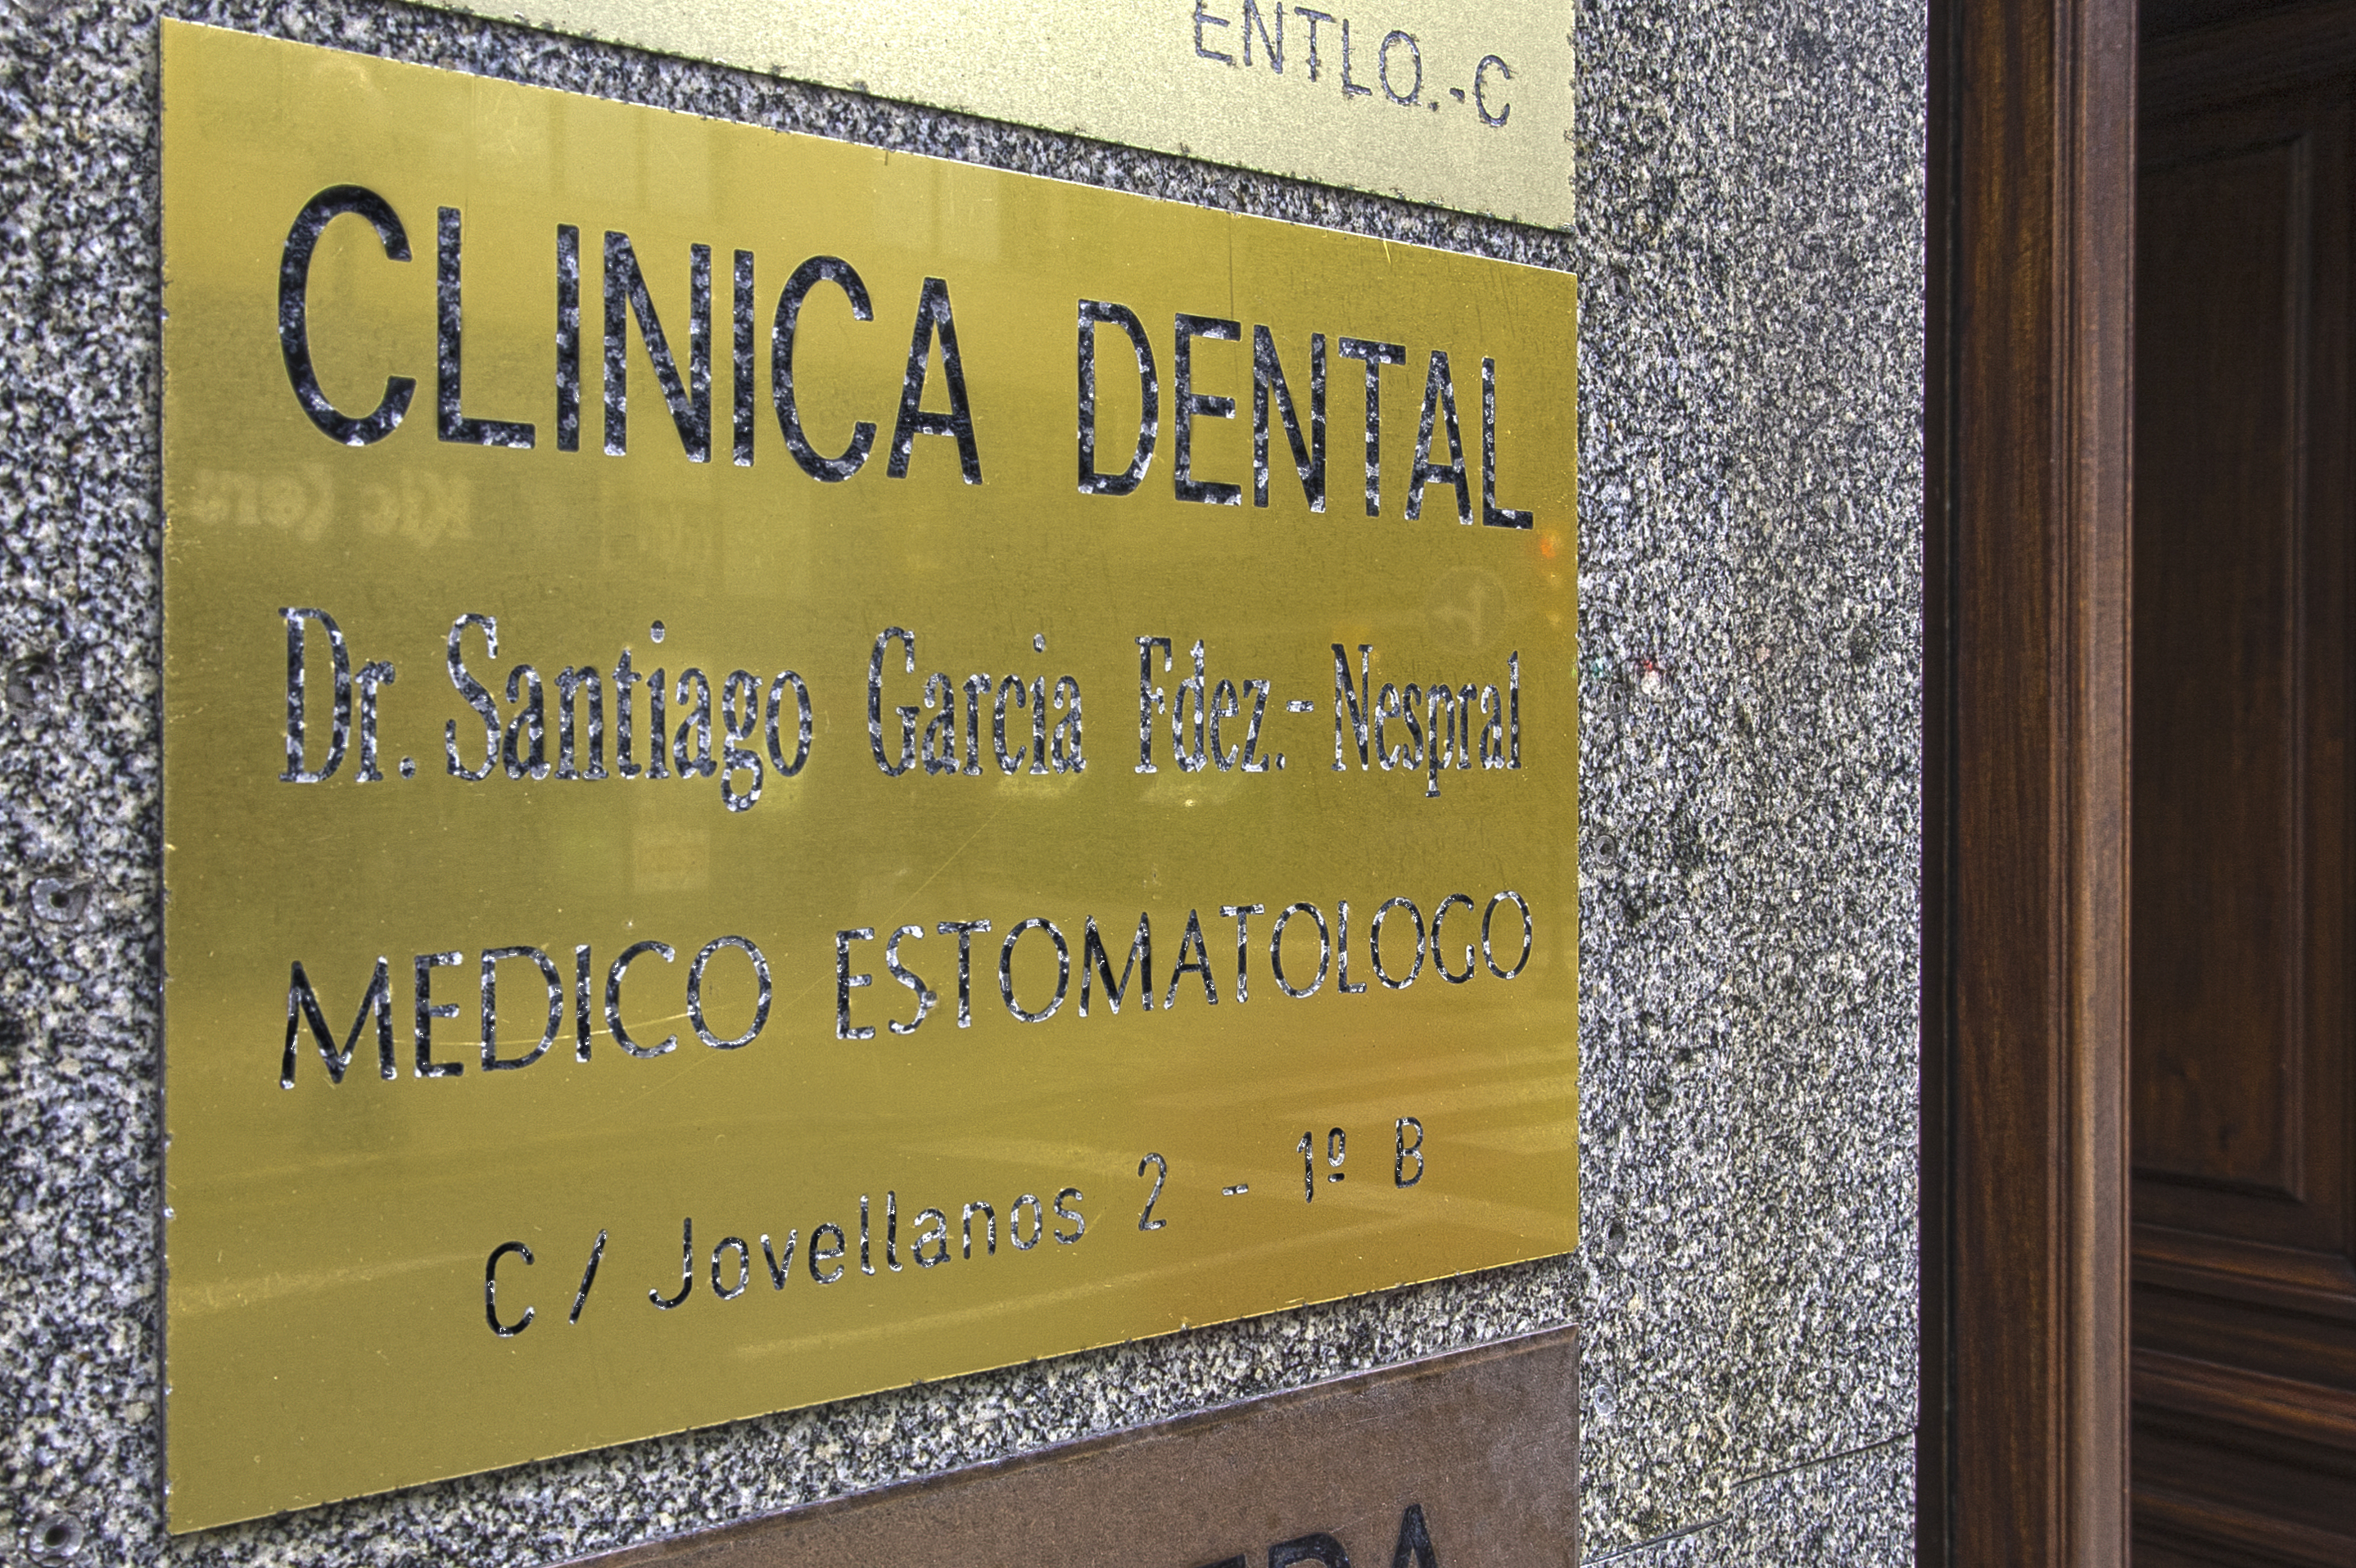 Foto 2 de Clínicas dentales en Gijón | Clínica Dental Santiago G. Fdez. - Nespral